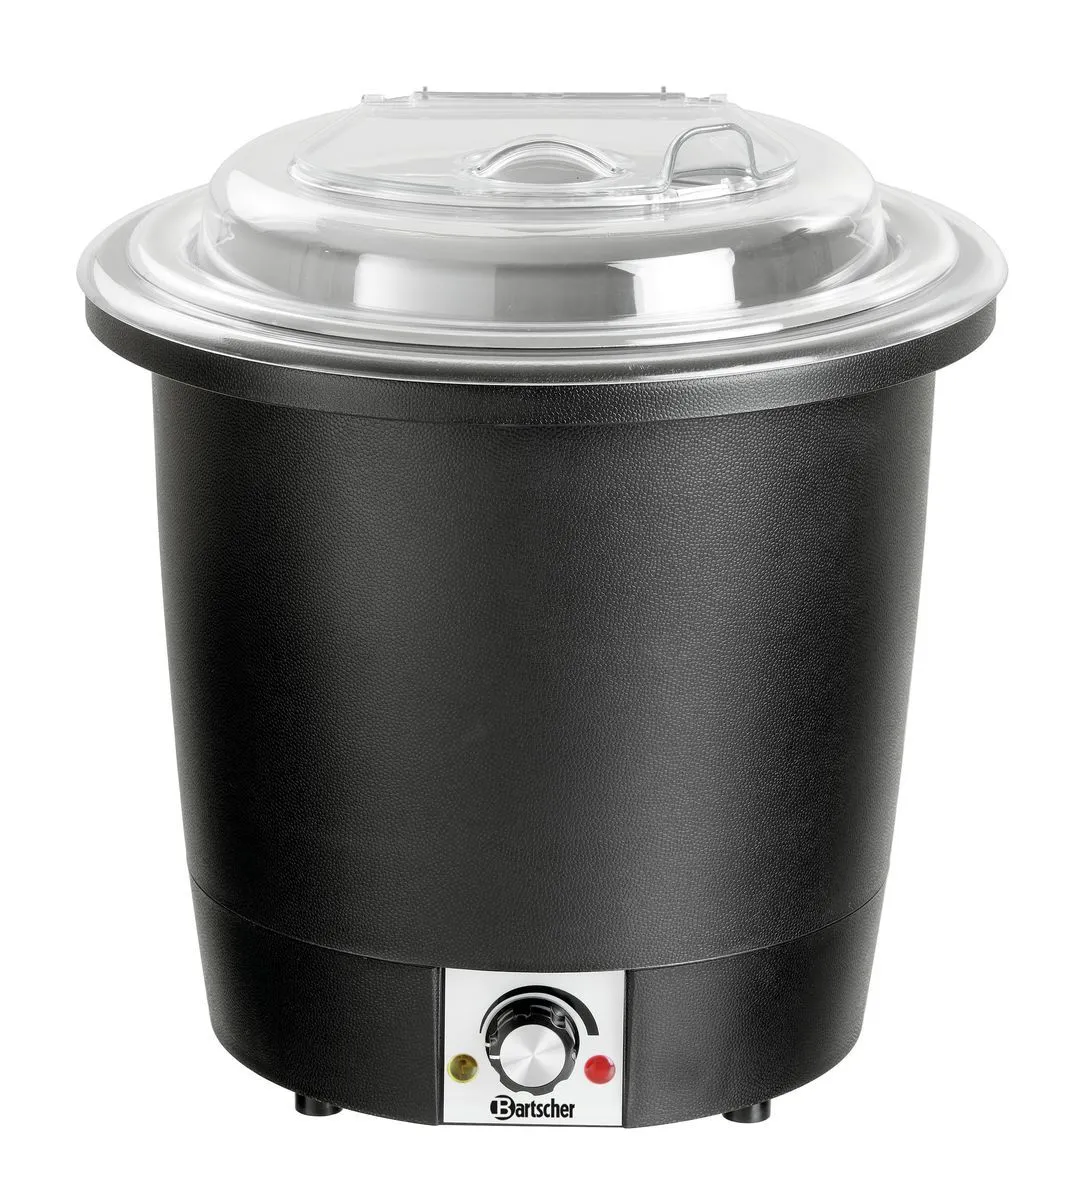 Bartscher Soup kettle, 10L, black